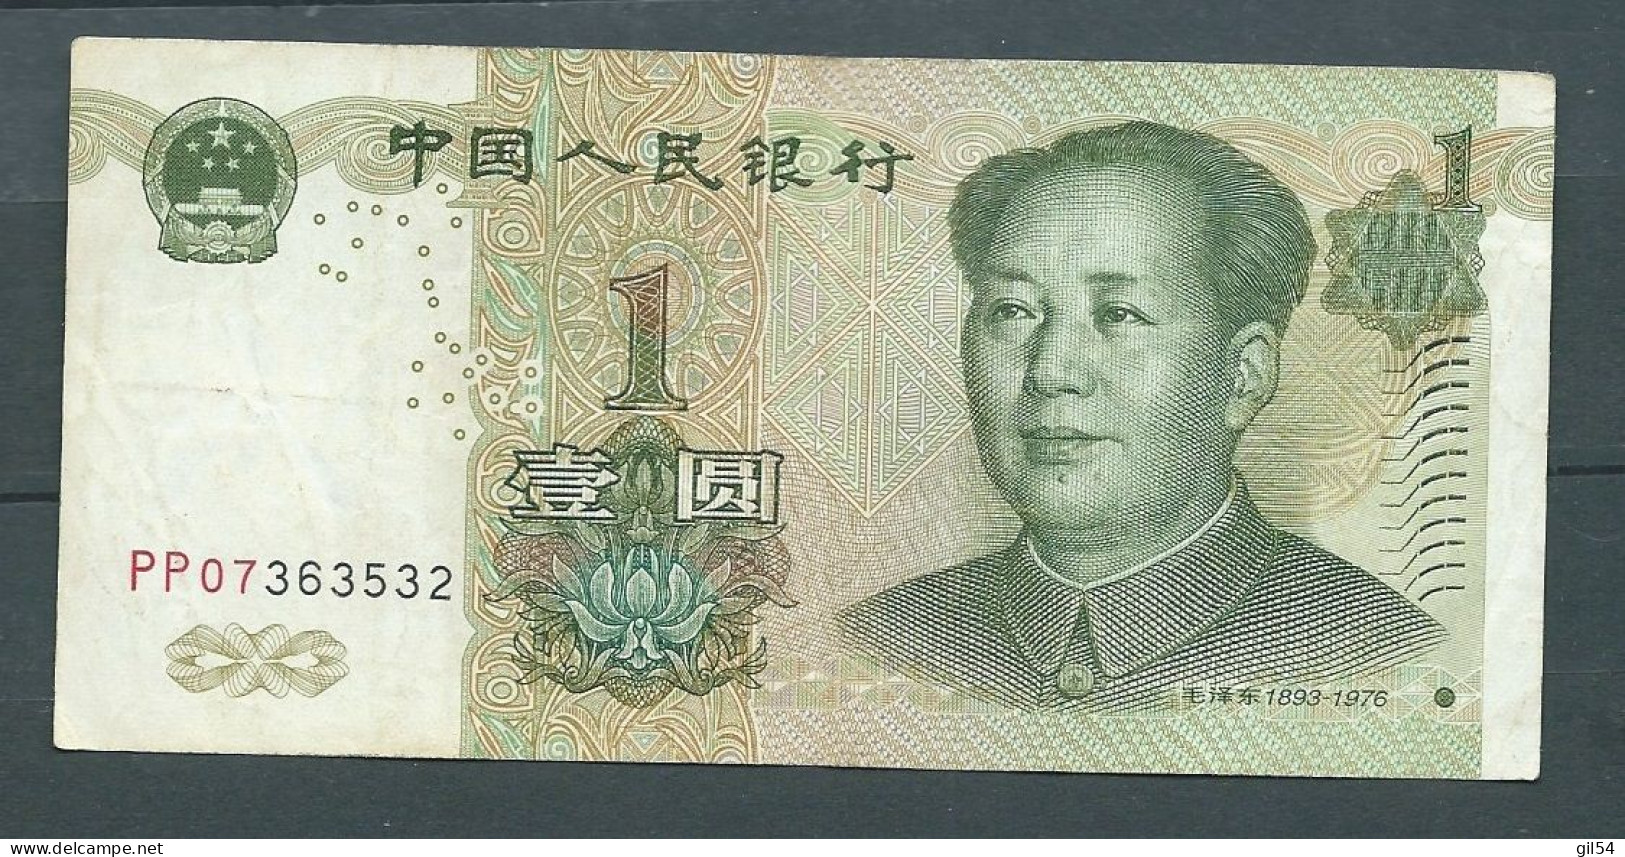 CHINE 1 YUAN 1999 -  PP07363532 - Laura 9329 - Chine